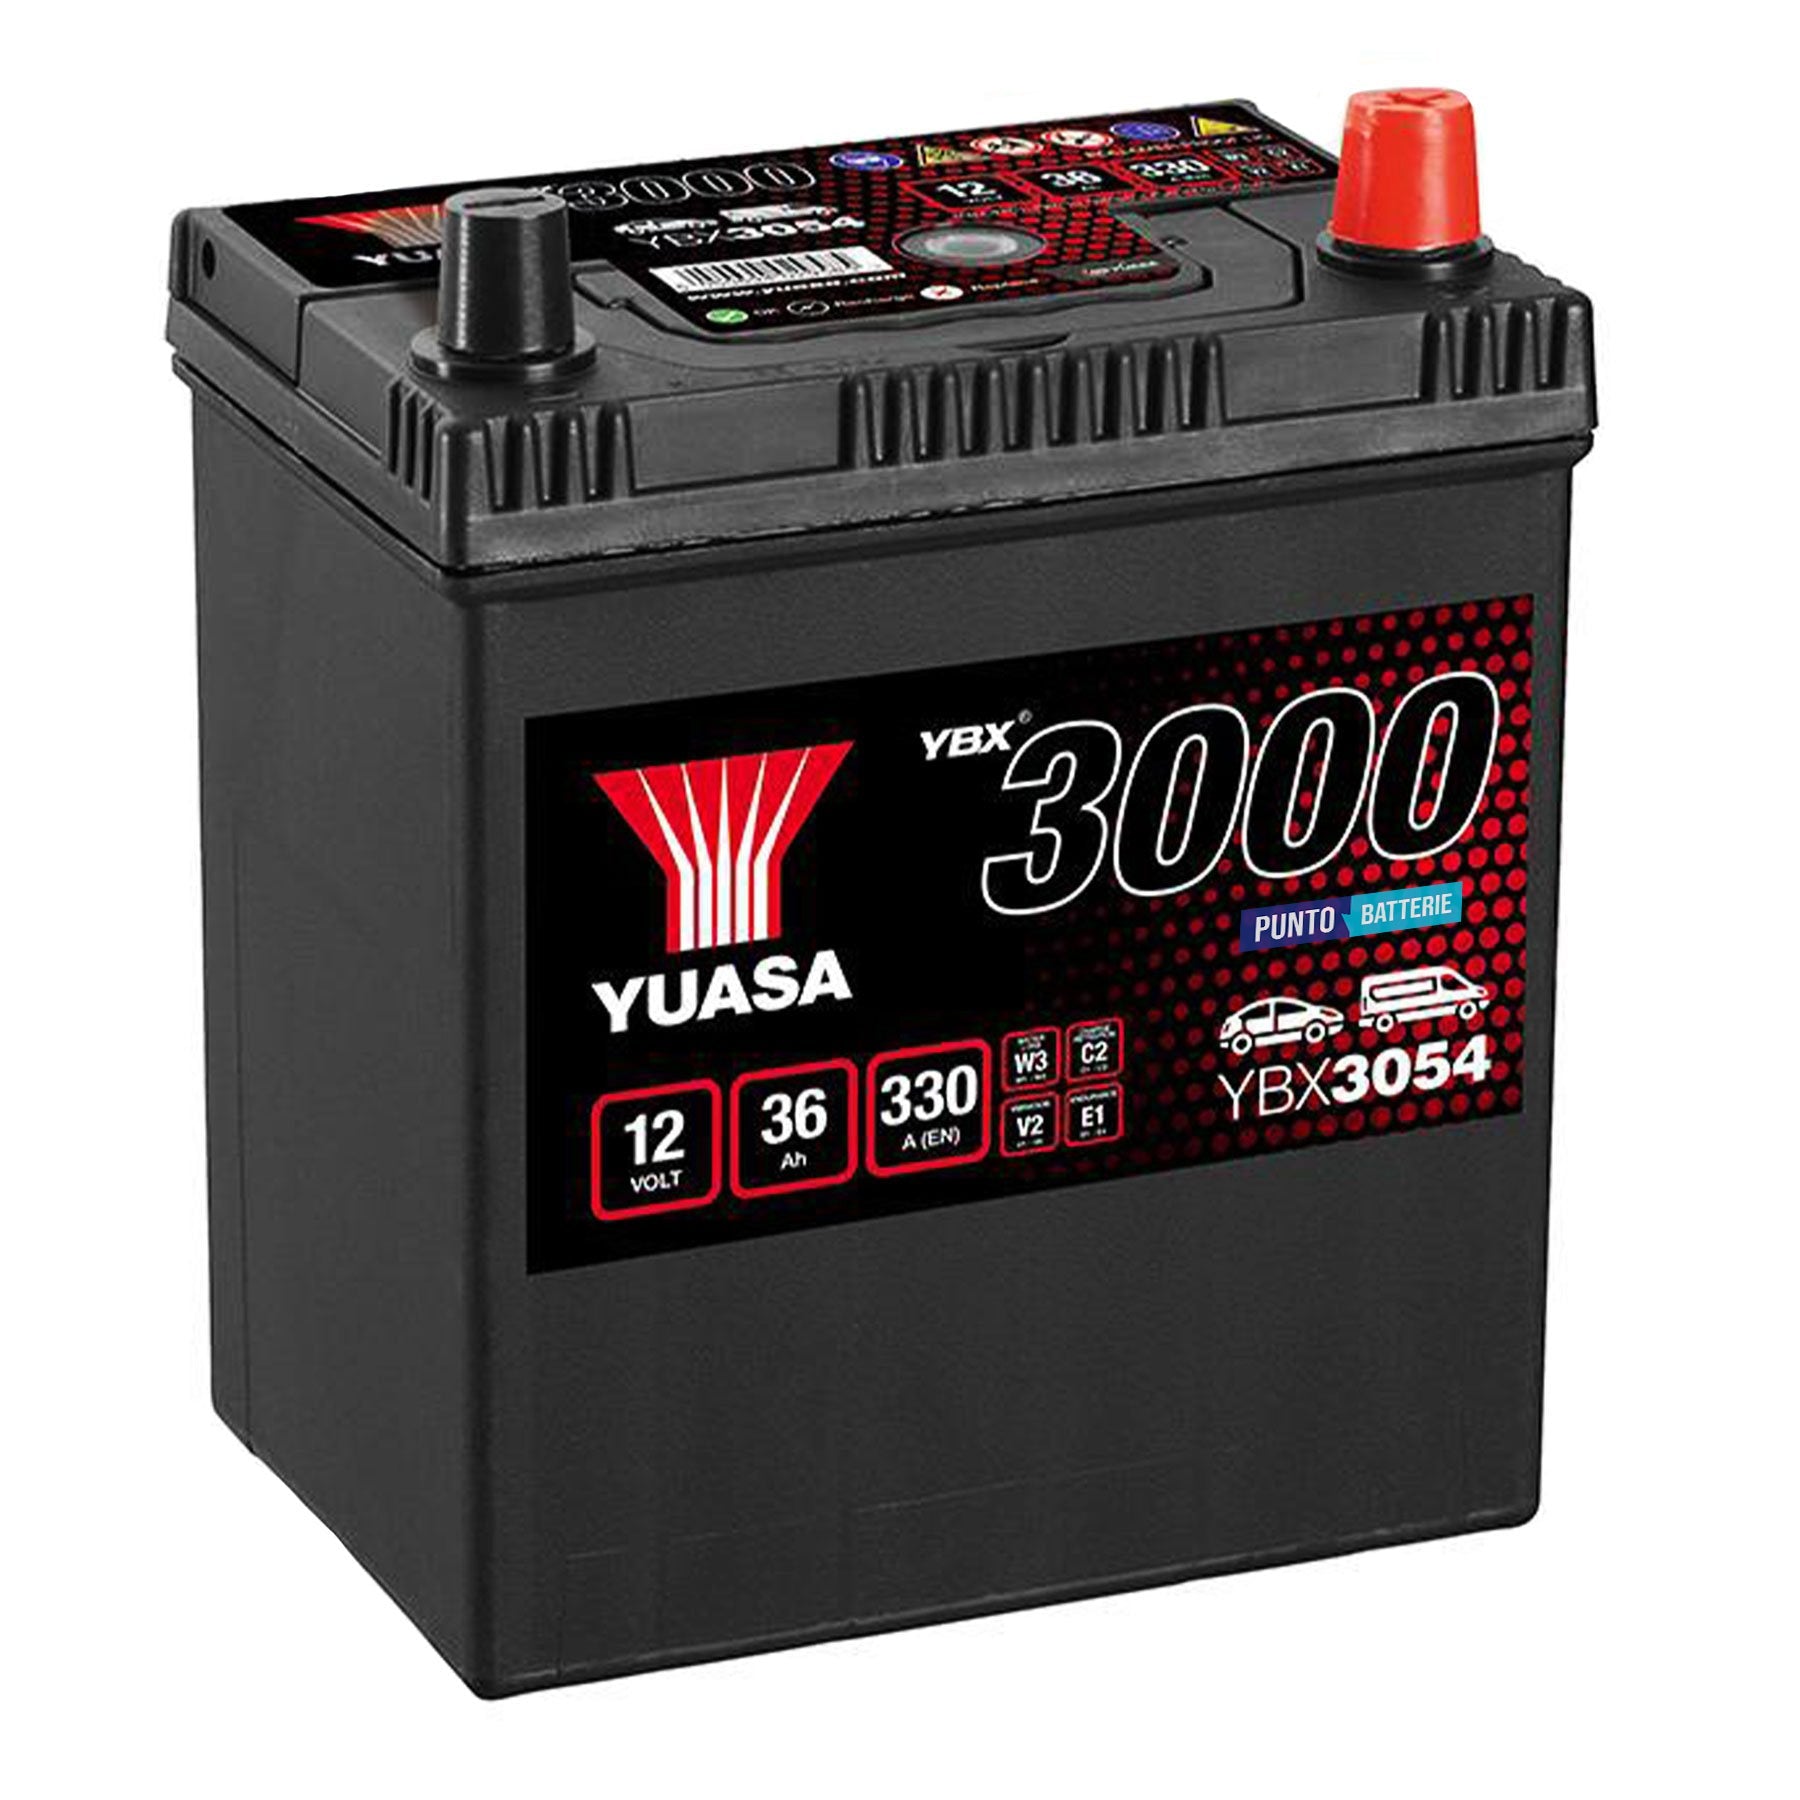 Batteria originale Yuasa YBX3000 YBX3054, dimensioni 187 x 127 x 227, polo positivo a destra, 12 volt, 36 amperora, 330 ampere. Batteria per auto e veicoli leggeri.